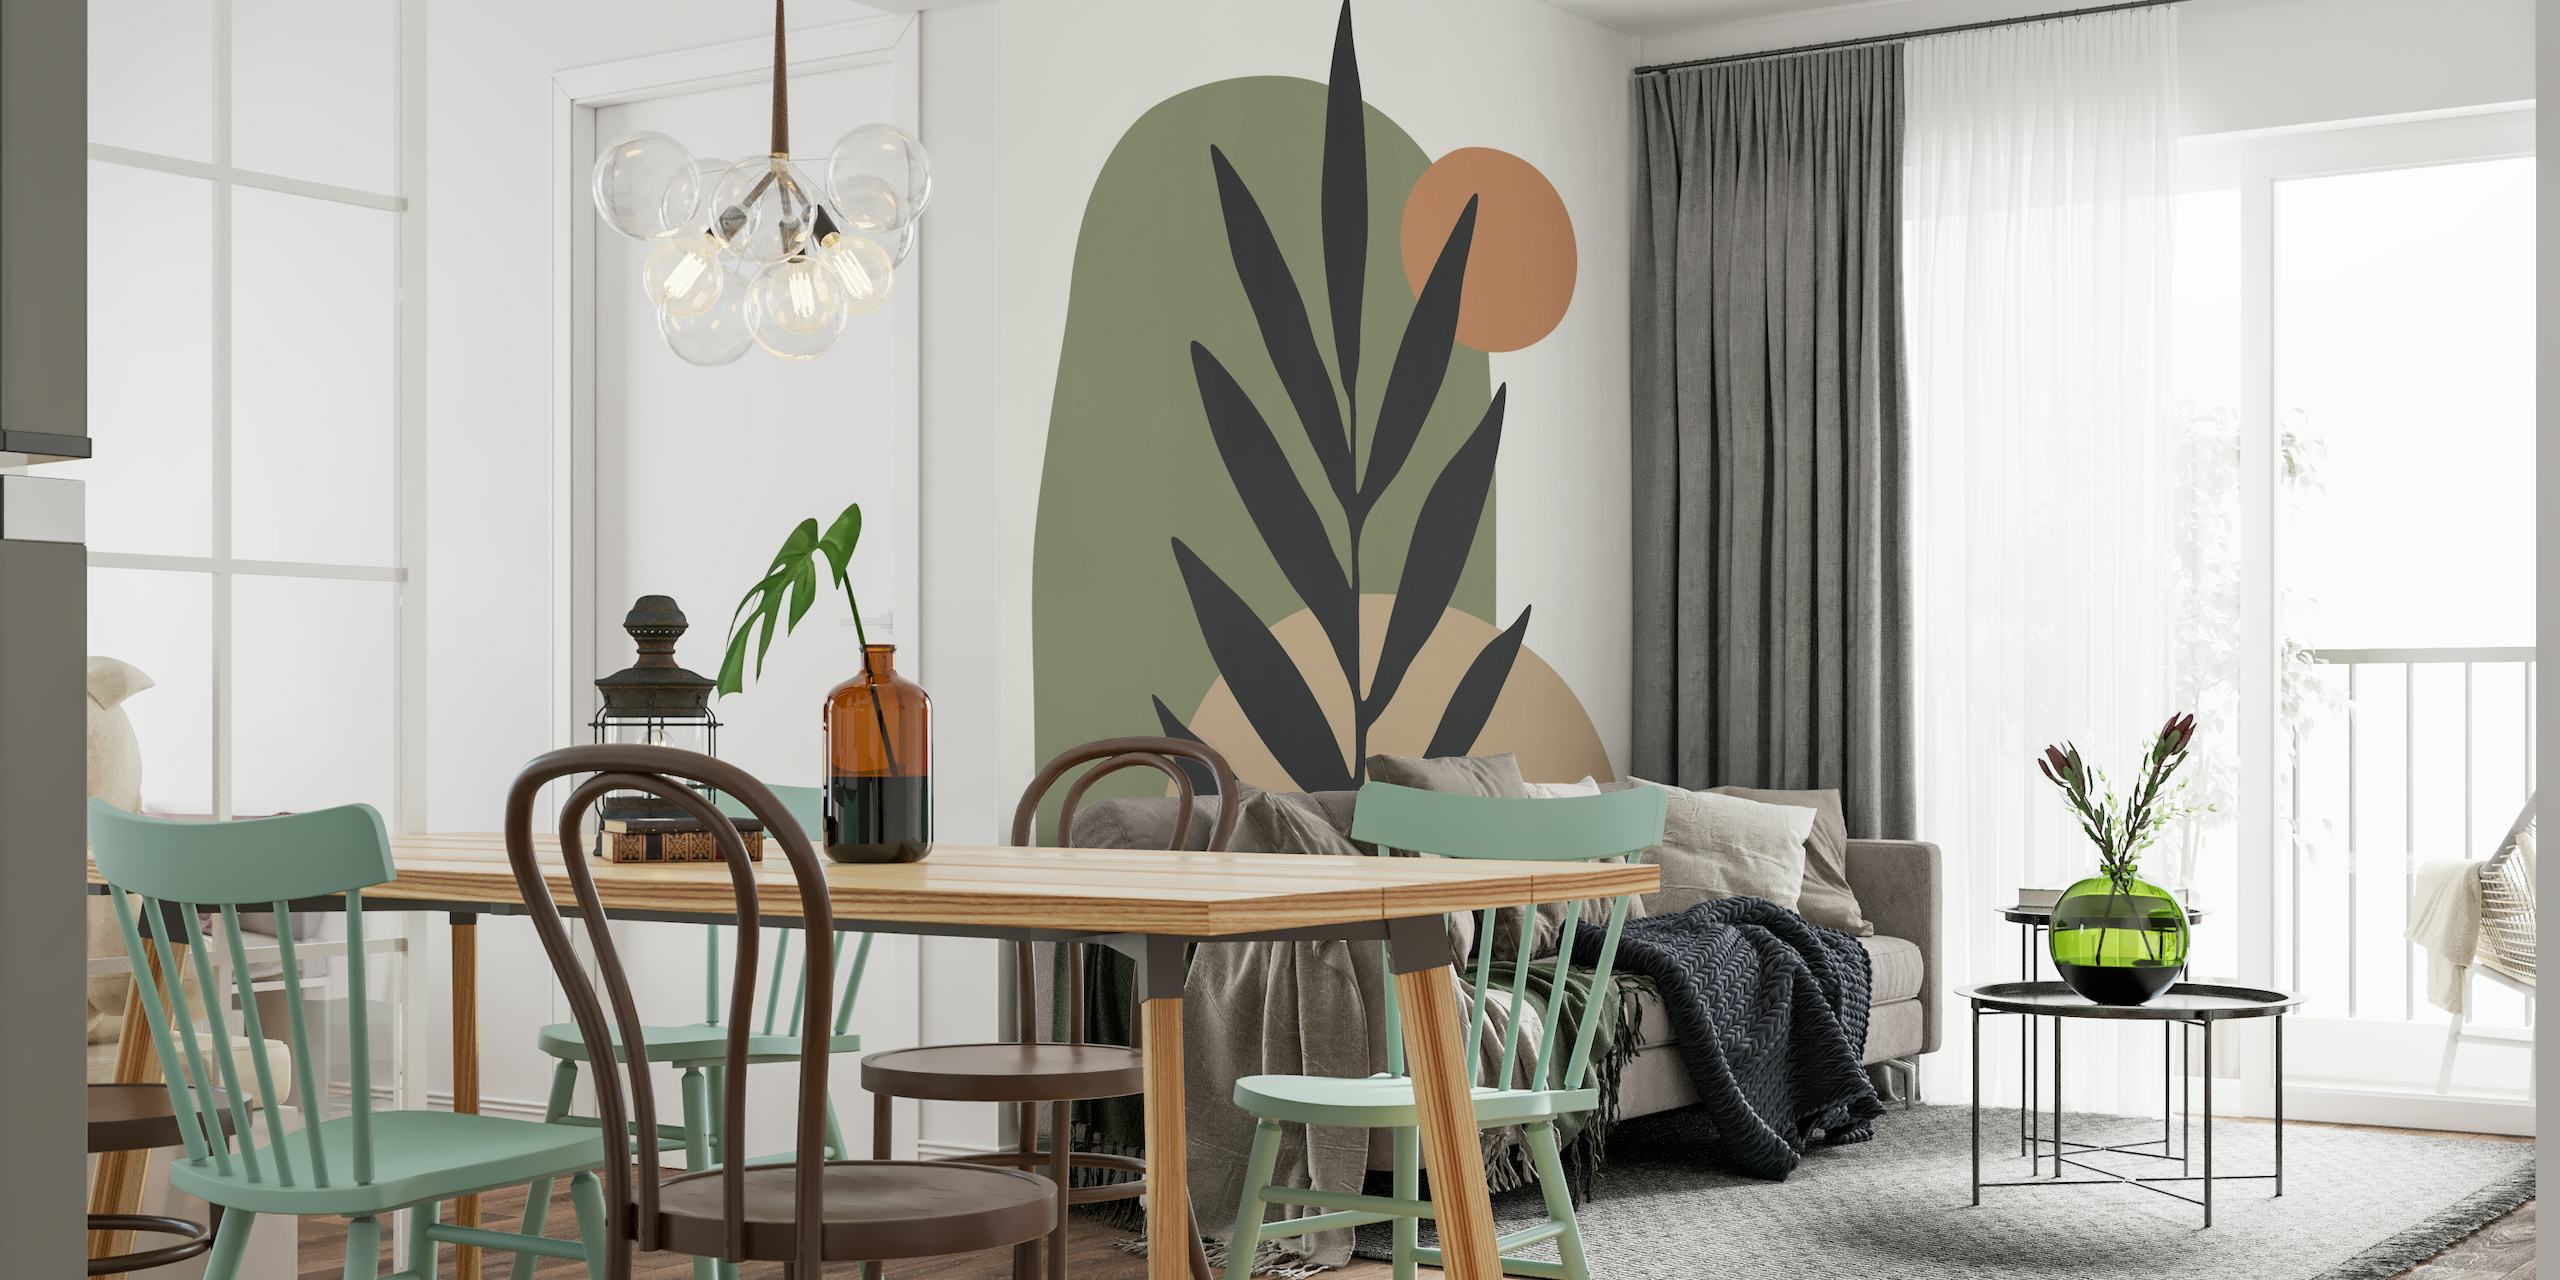 Abstraktní botanická nástěnná malba s minimalistickou siluetou rostlin s tvary zemitých tónů